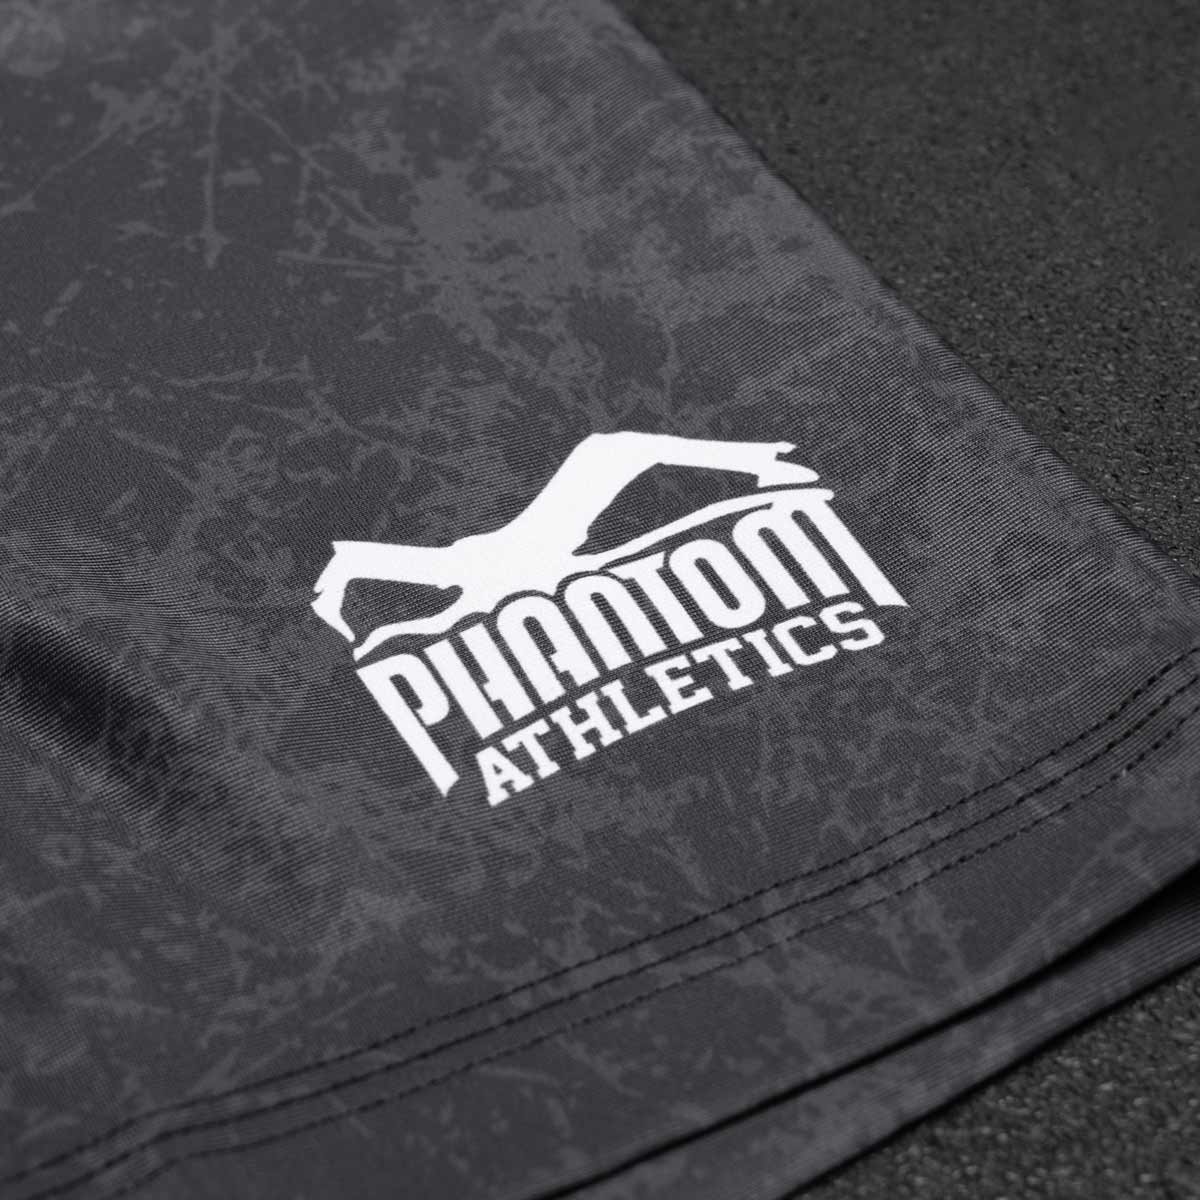 Die Phantom Vector Serious MMA Compression Fight Shorts im Smiley Design für deinen Kampfsport. Mit hochwertigem Sublimationsdruck in Top Qualität. 